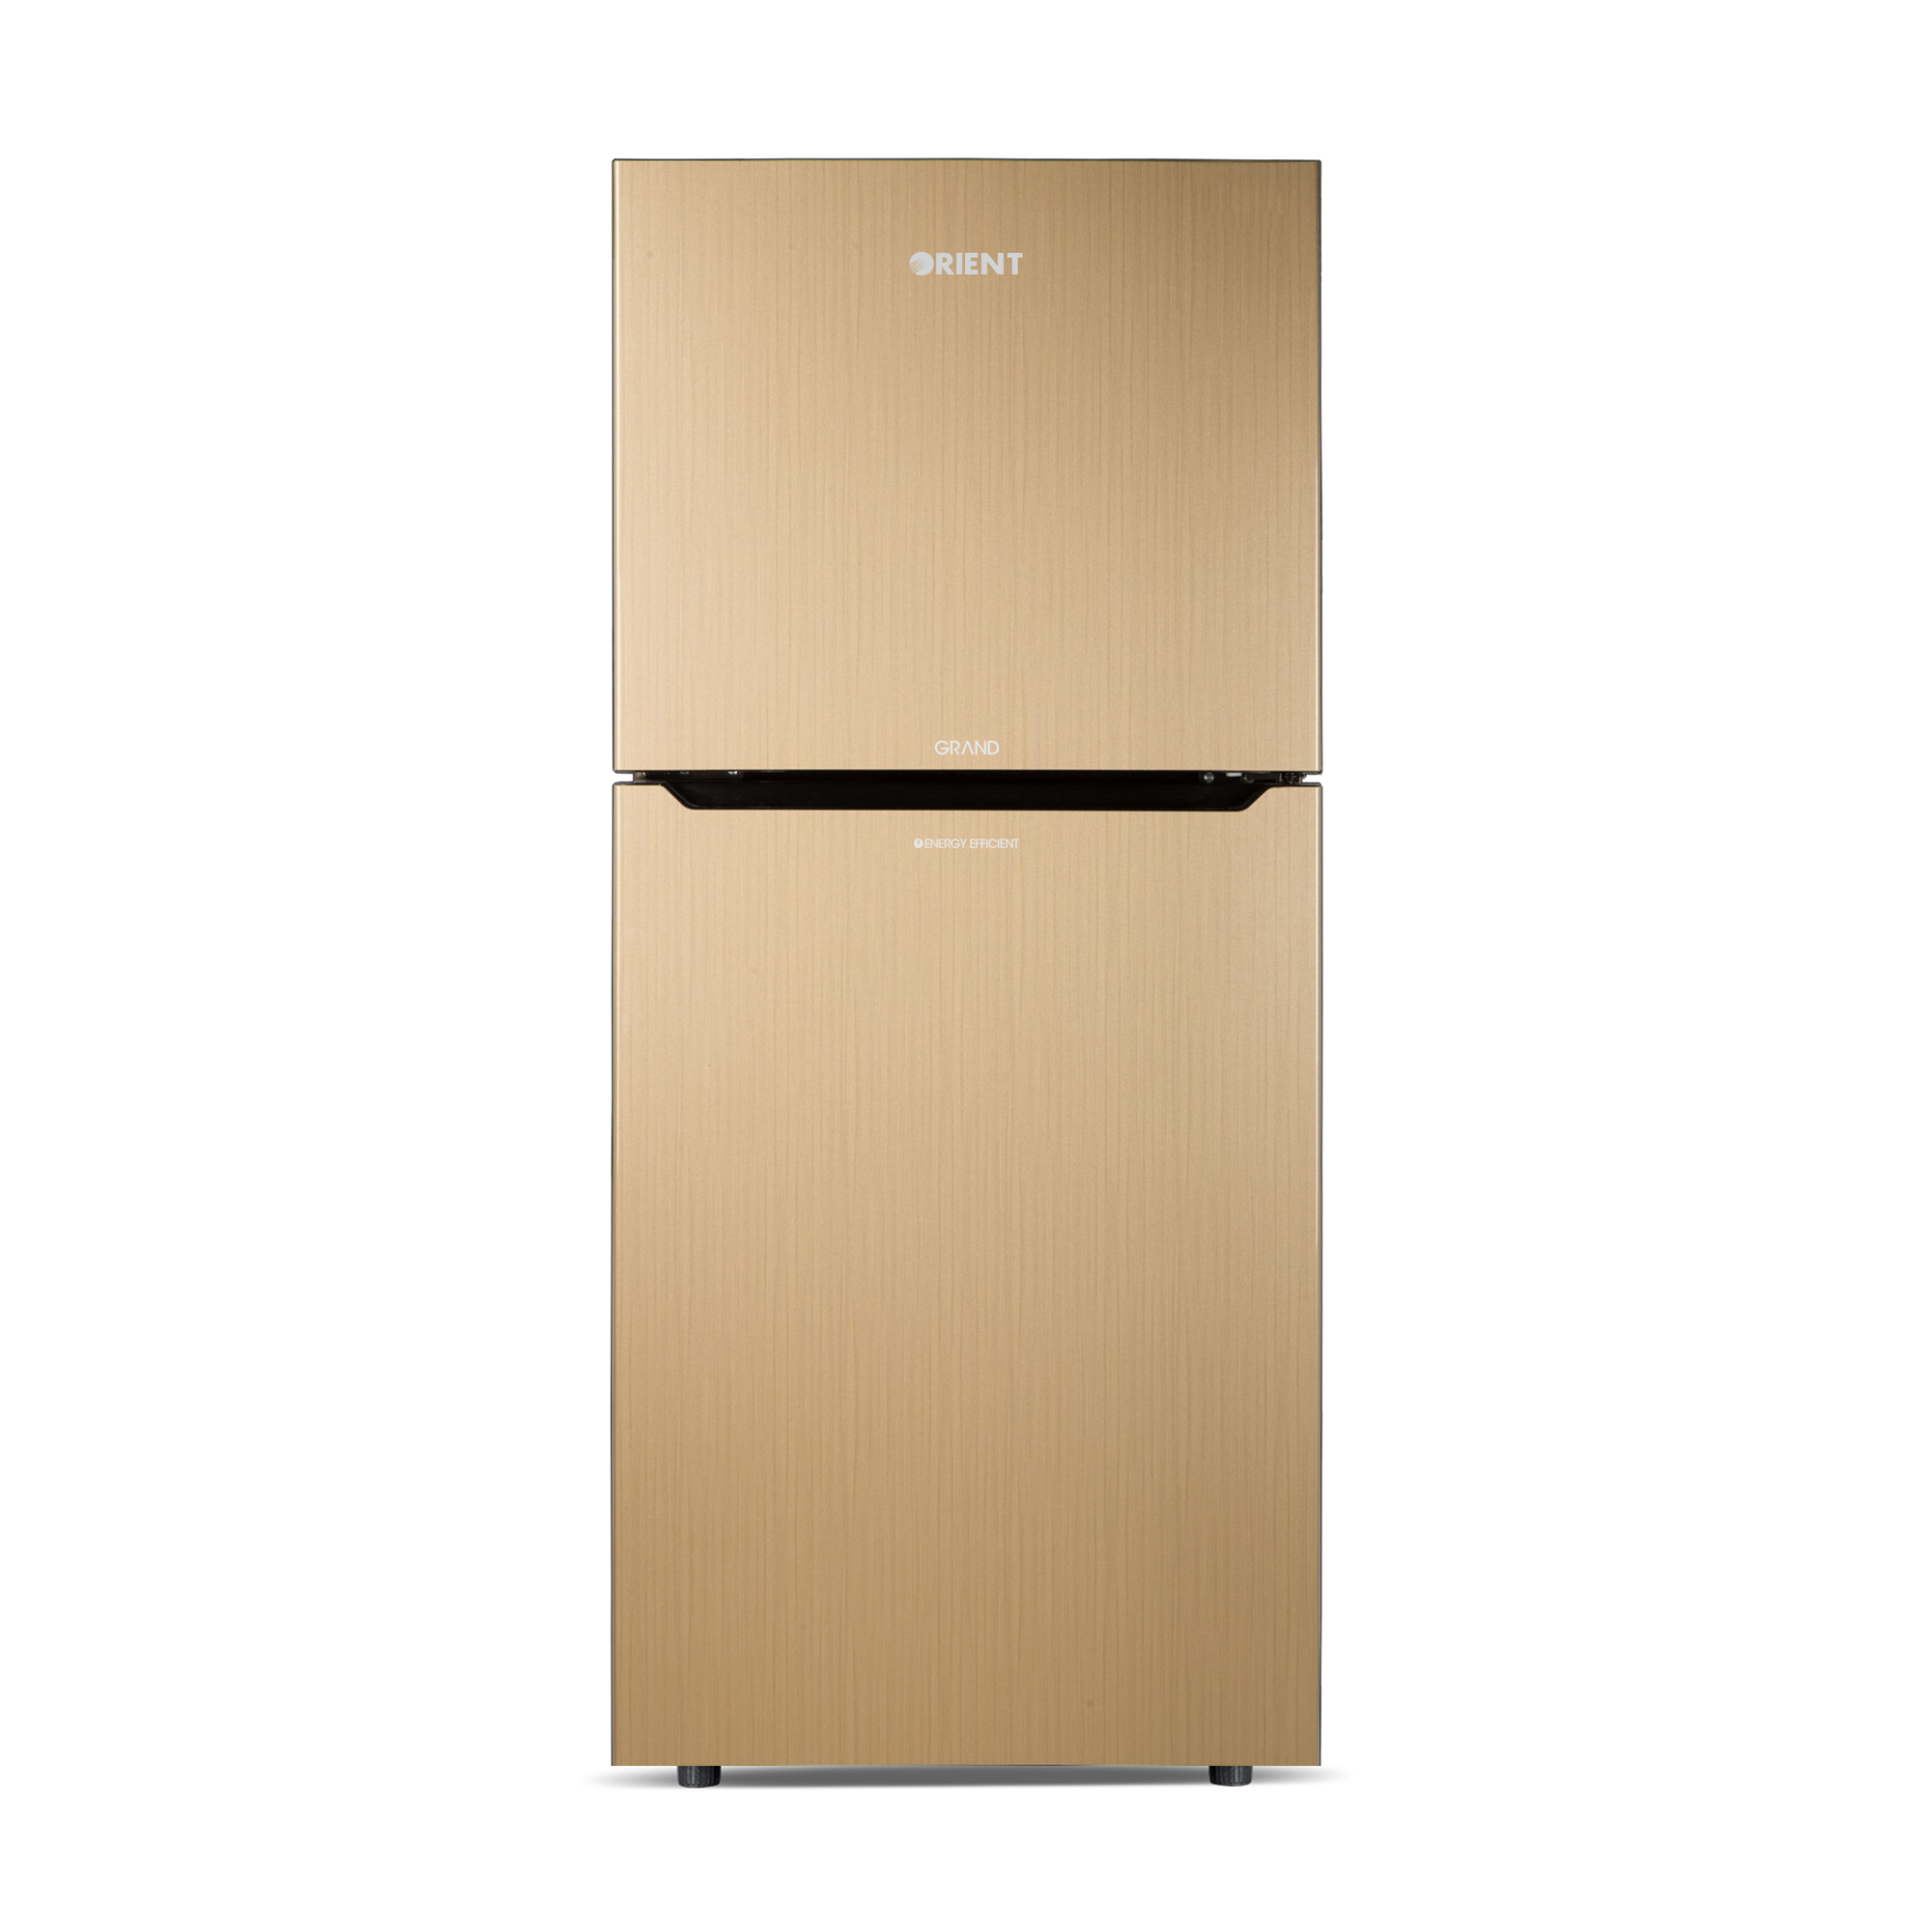 Orient Refrigerator Double Door - 505H Grand VCM